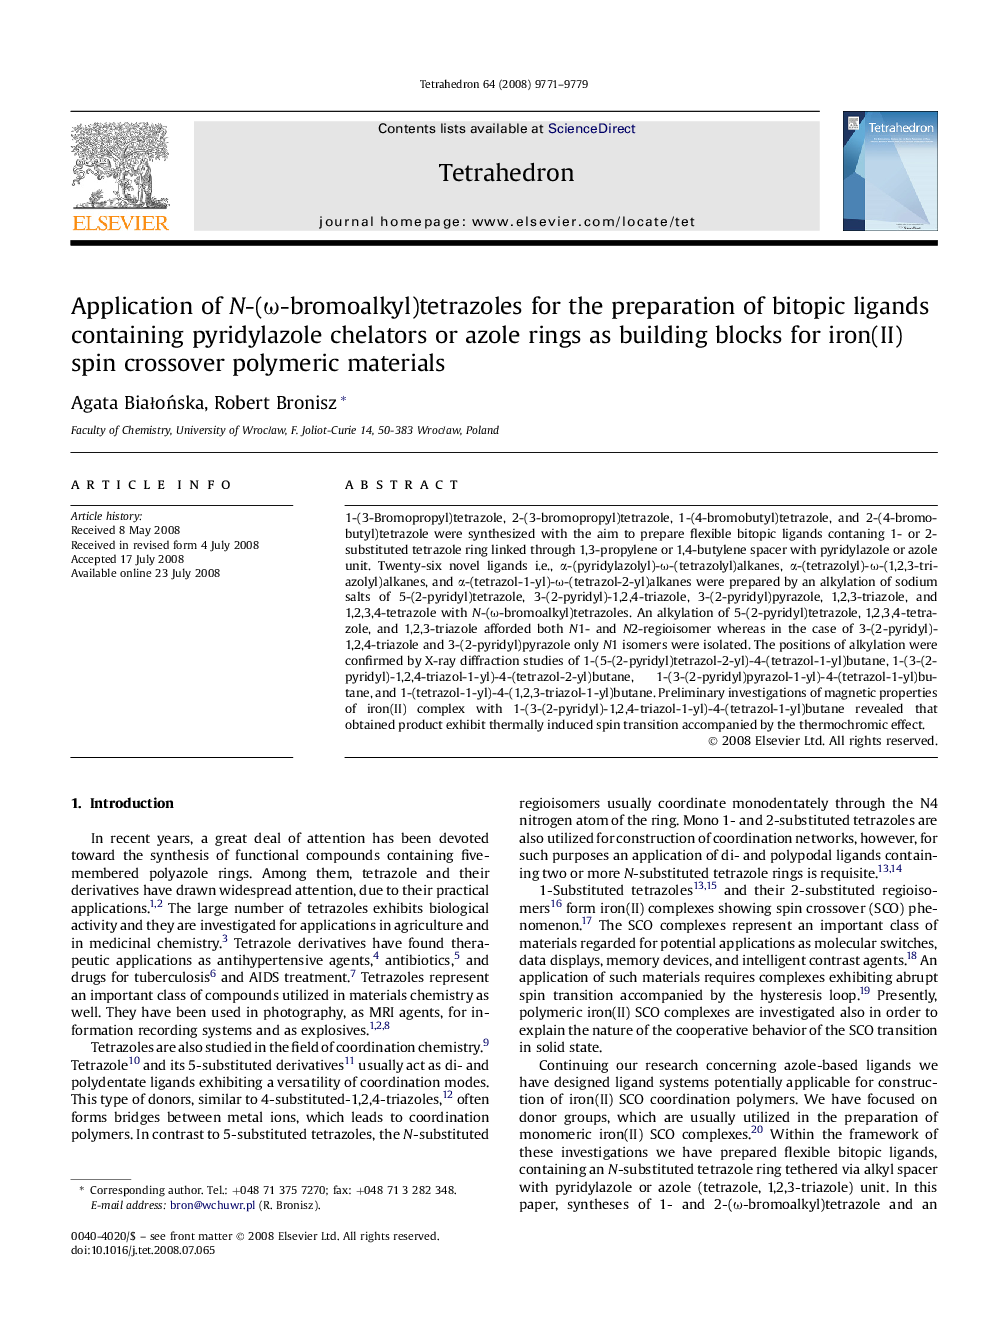 Application of N-(Ï-bromoalkyl)tetrazoles for the preparation of bitopic ligands containing pyridylazole chelators or azole rings as building blocks for iron(II) spin crossover polymeric materials